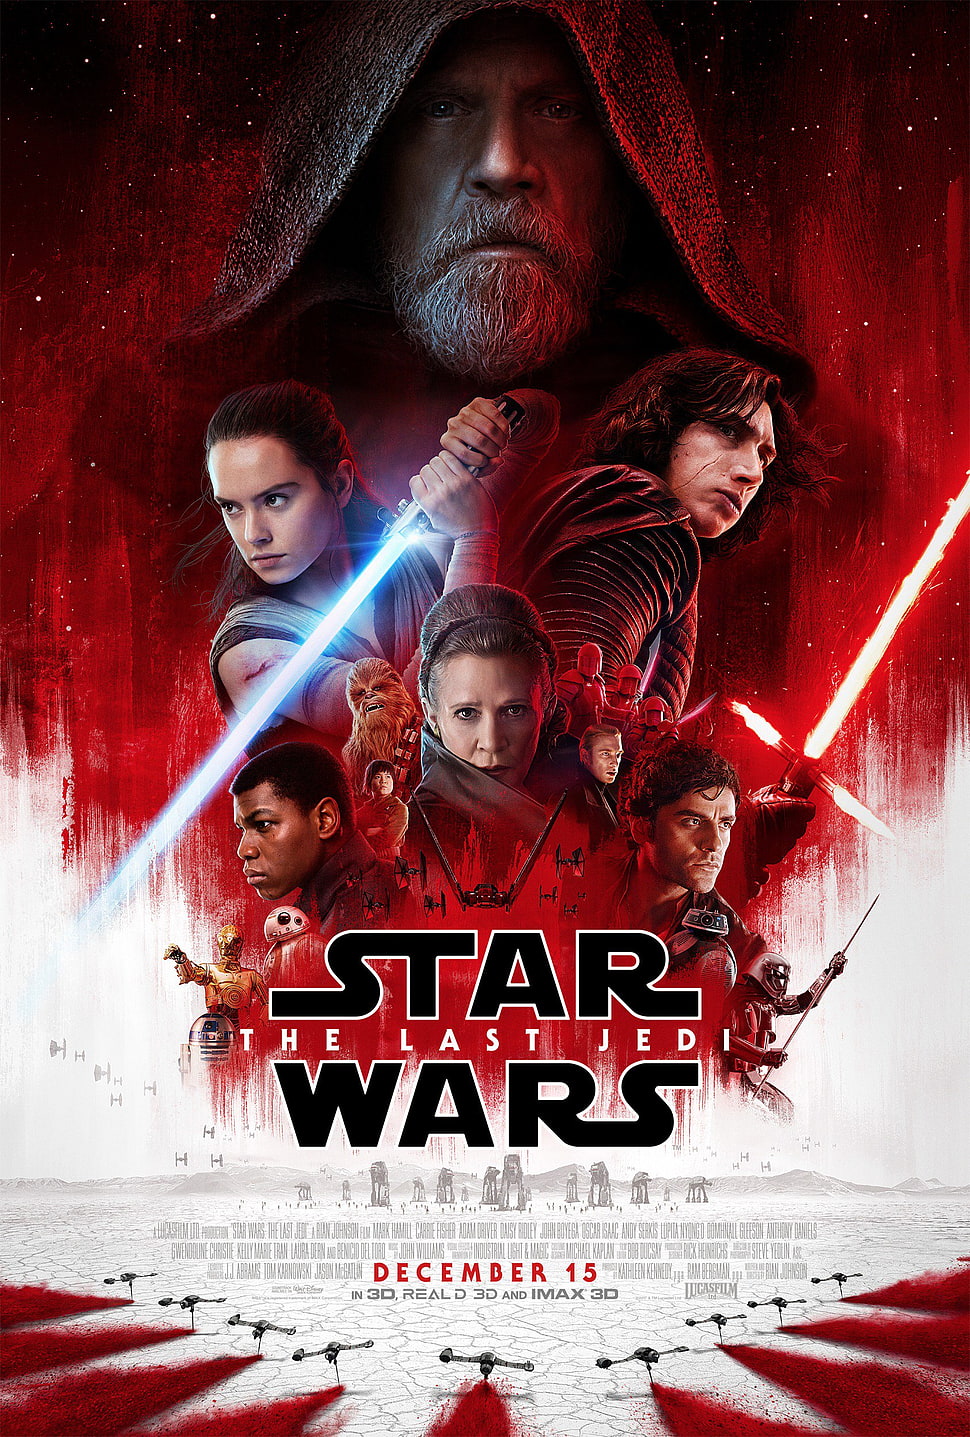 Star Wars the last jedi movie poster, Star Wars, movies, Star Wars: The Last Jedi, poster HD wallpaper